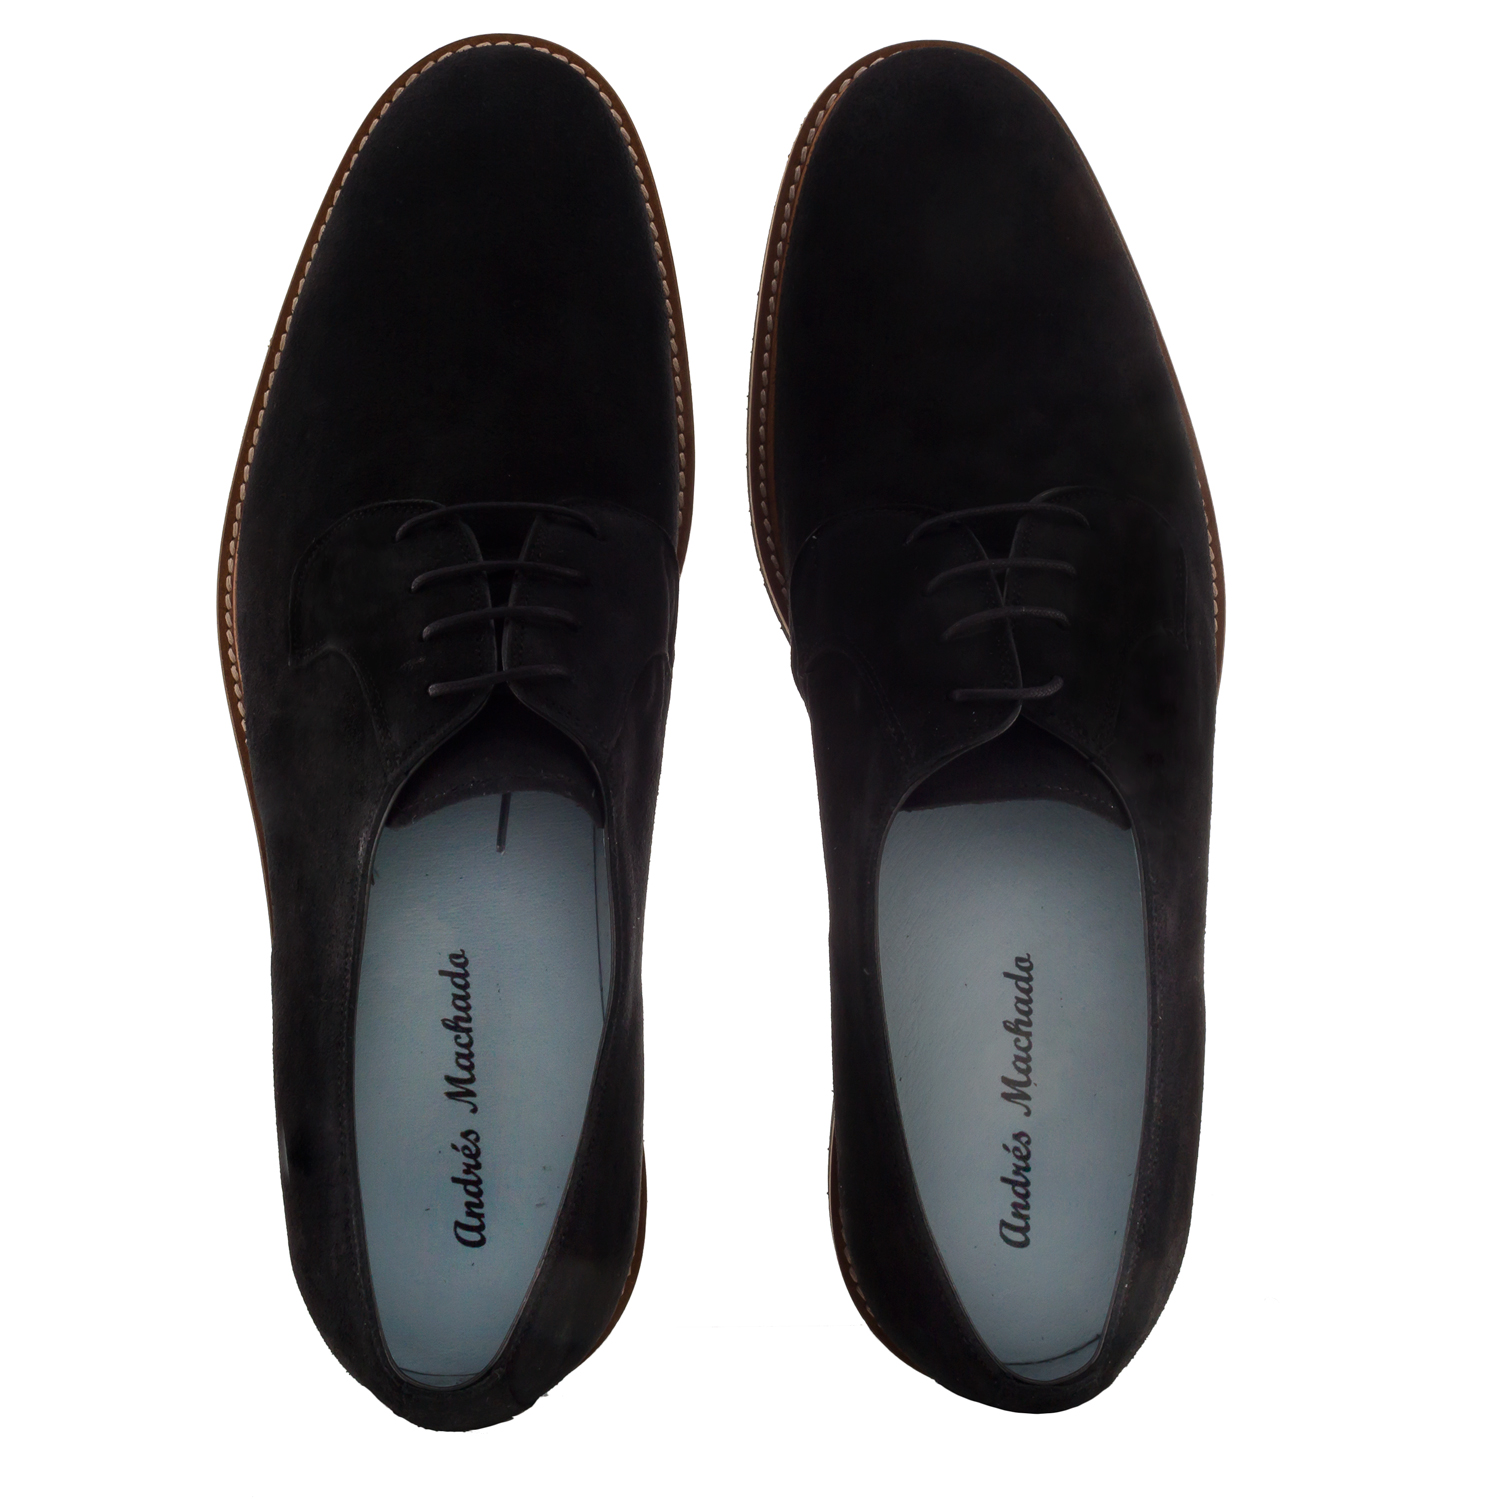 Chaussures Hommes Style Oxford en Cuir Suéde Noir 